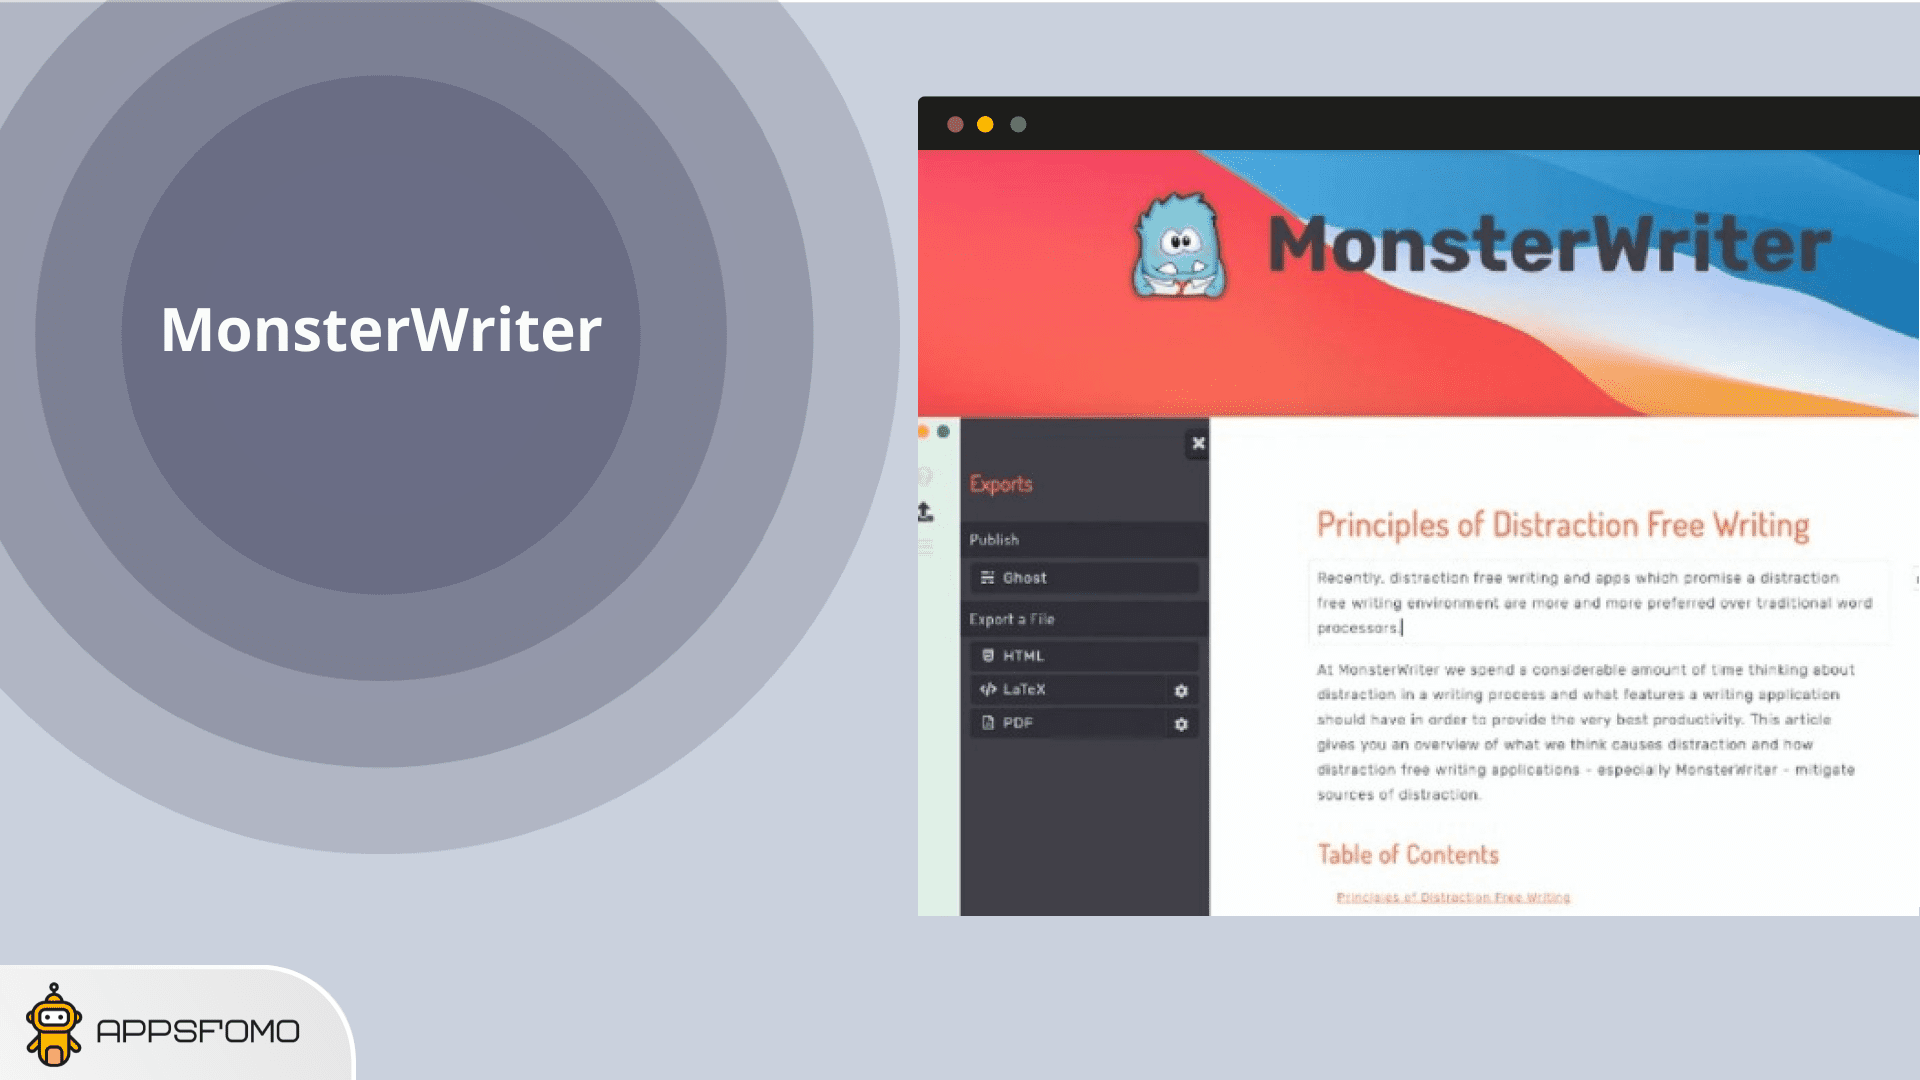 MonsterWriter